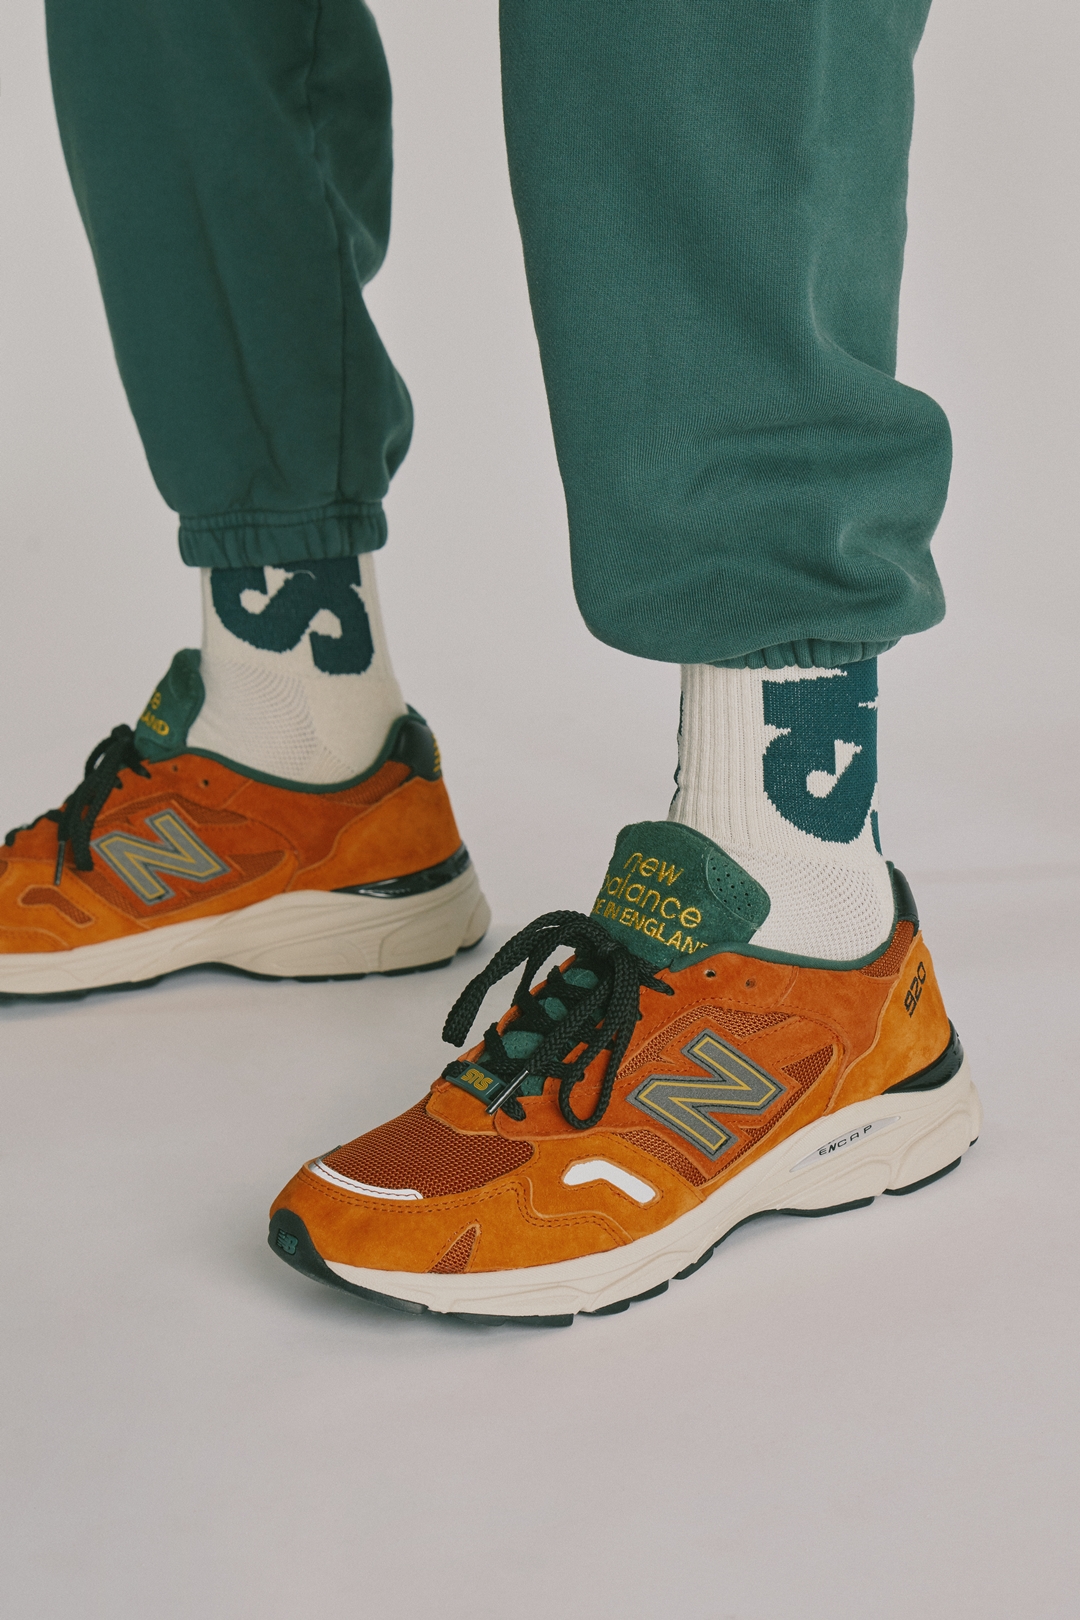 1/15 発売！Sneakersnstuff × New Balance M920 “Orange/Green” (スニーカーズエンスタッフ ニューバランス “オレンジ/グリーン”)